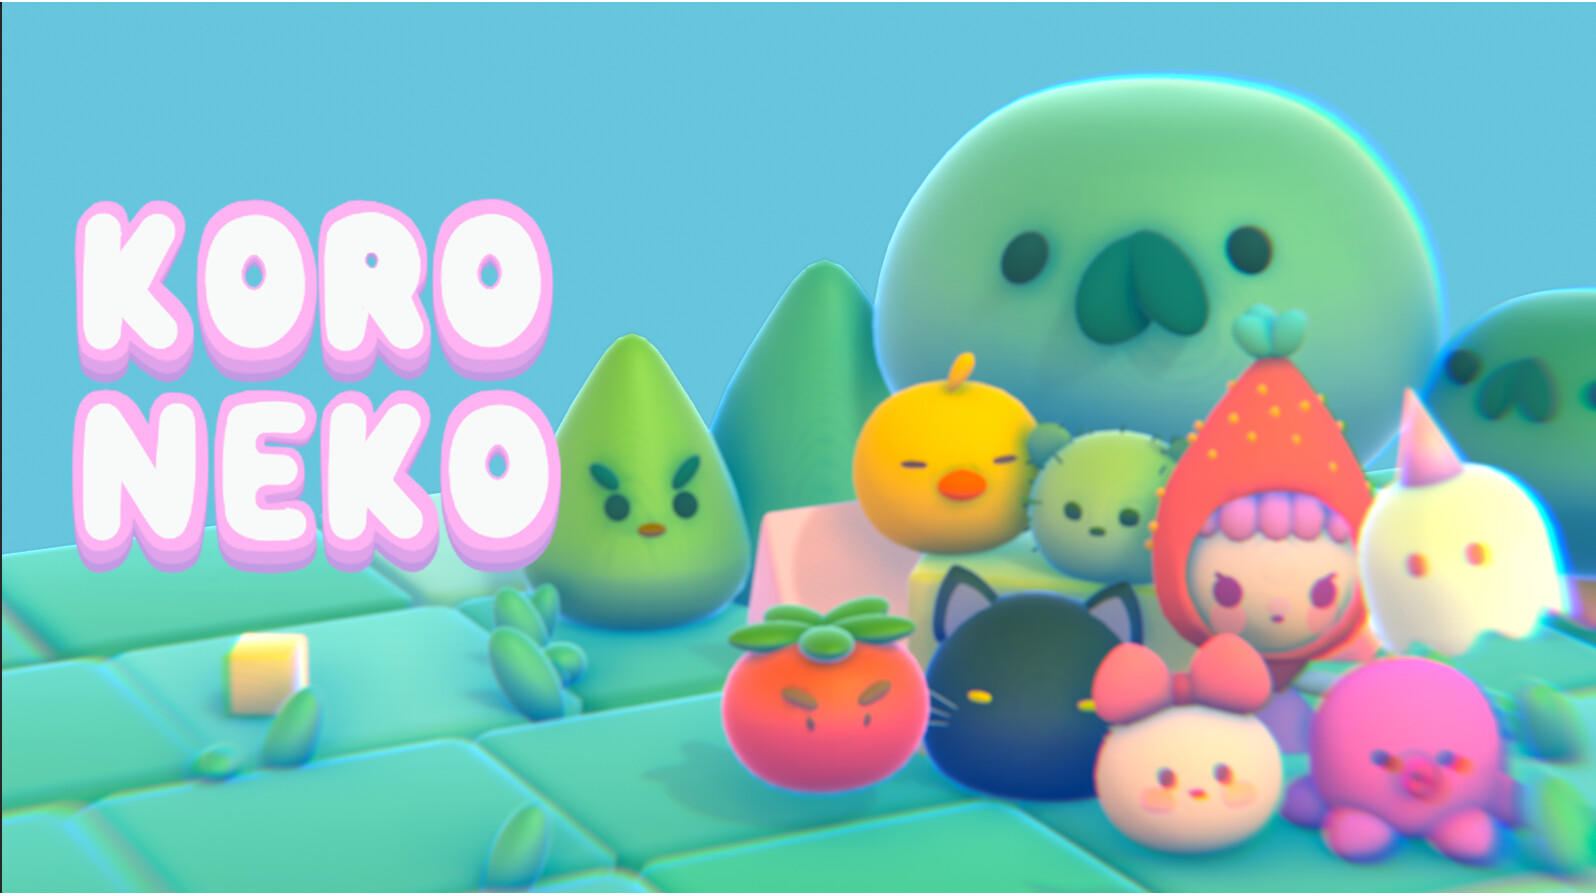 Screenshot 1 of Koro Neko 